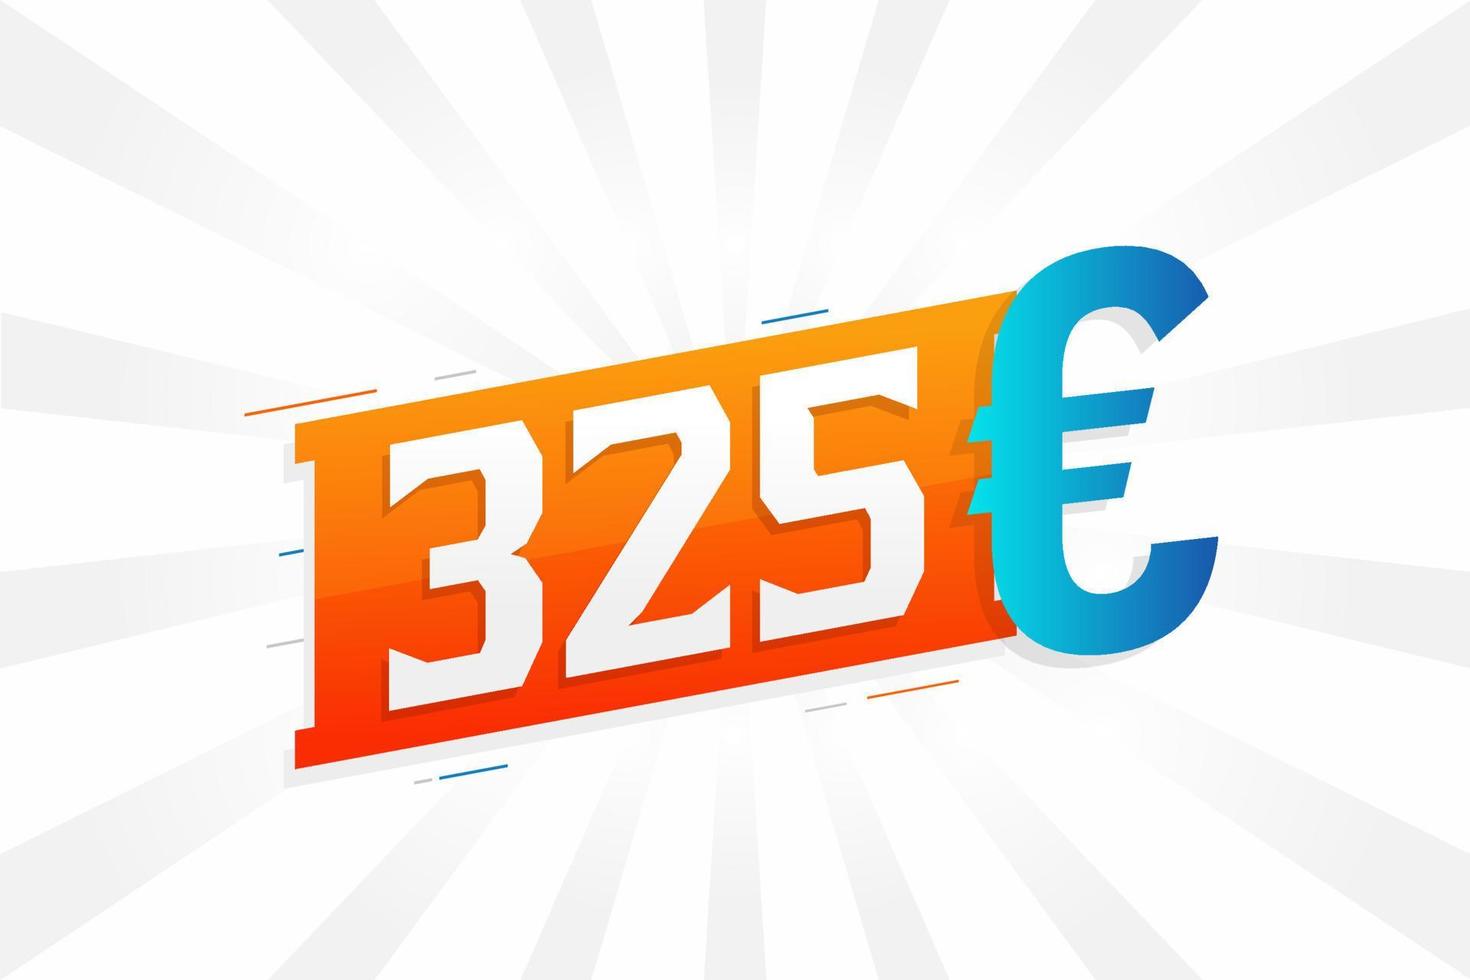 325 Euro Currency vector text symbol. 325 Euro European Union Money stock vector